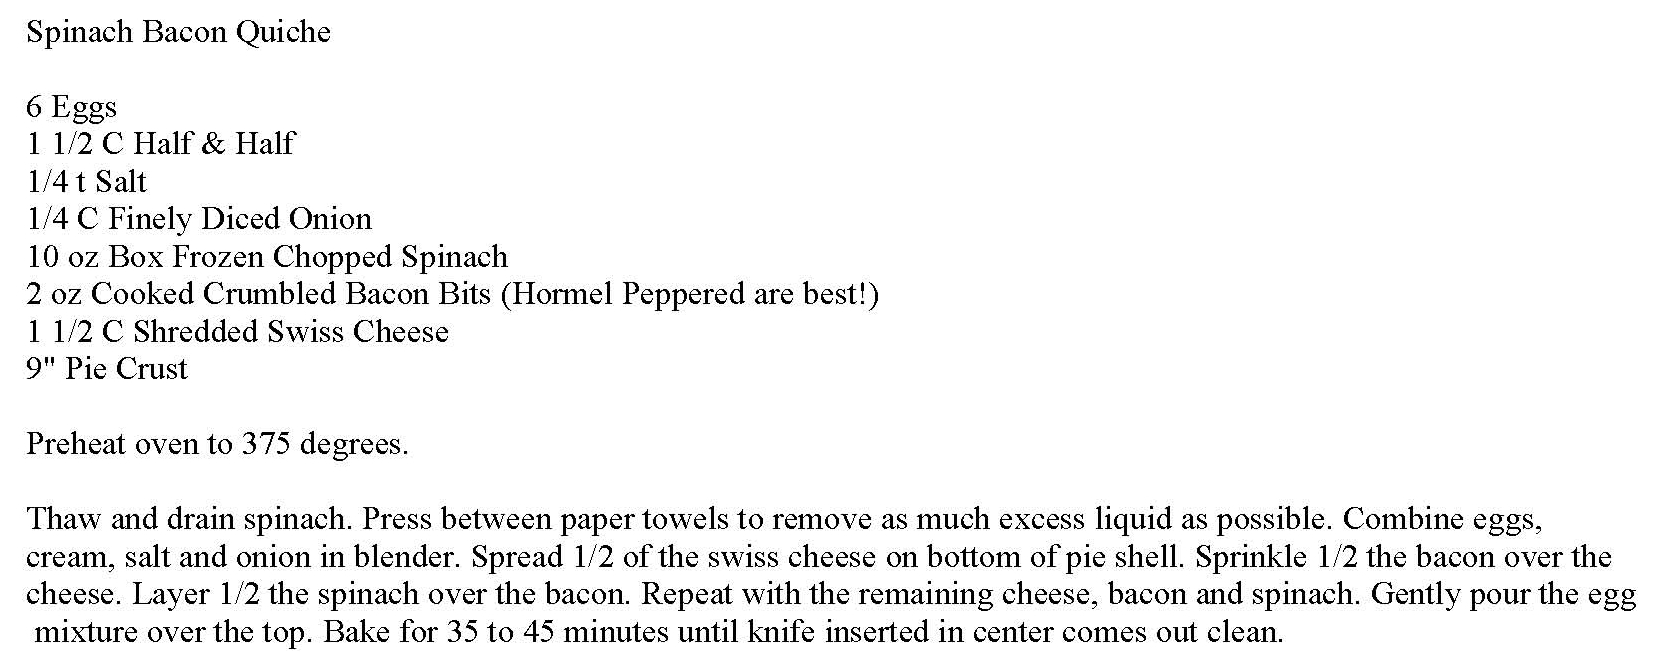 Spinach Bacon Quiche Recipe